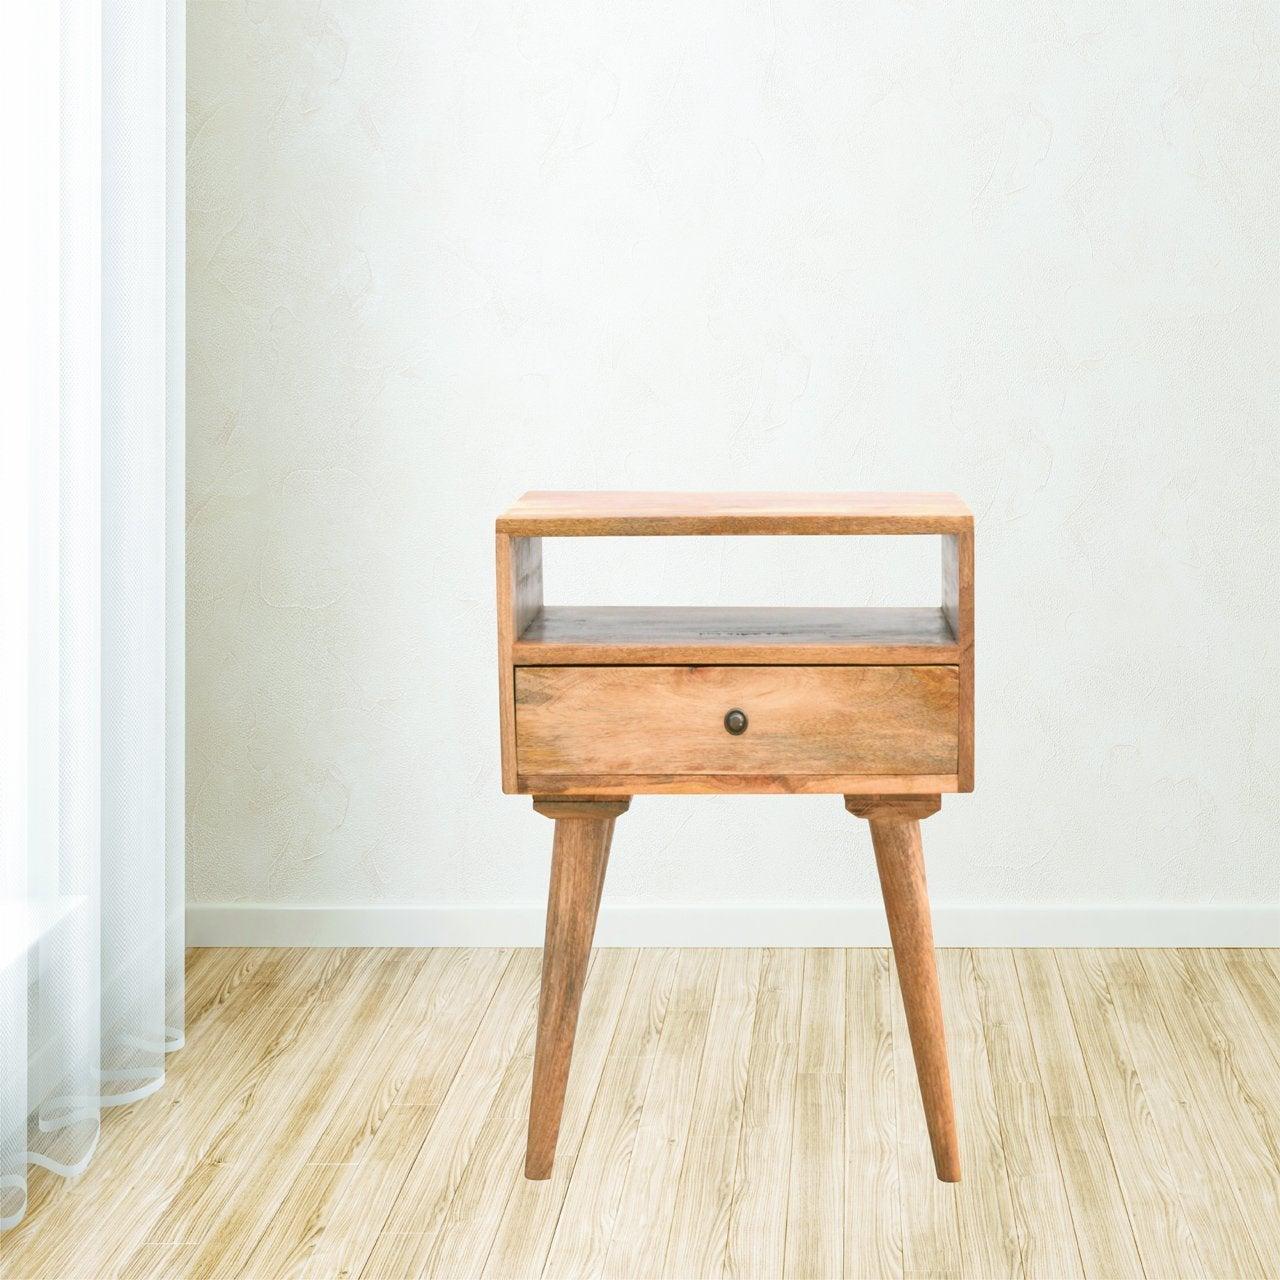 Modern solid wood bedside table with open slot - crimblefest furniture - image 3